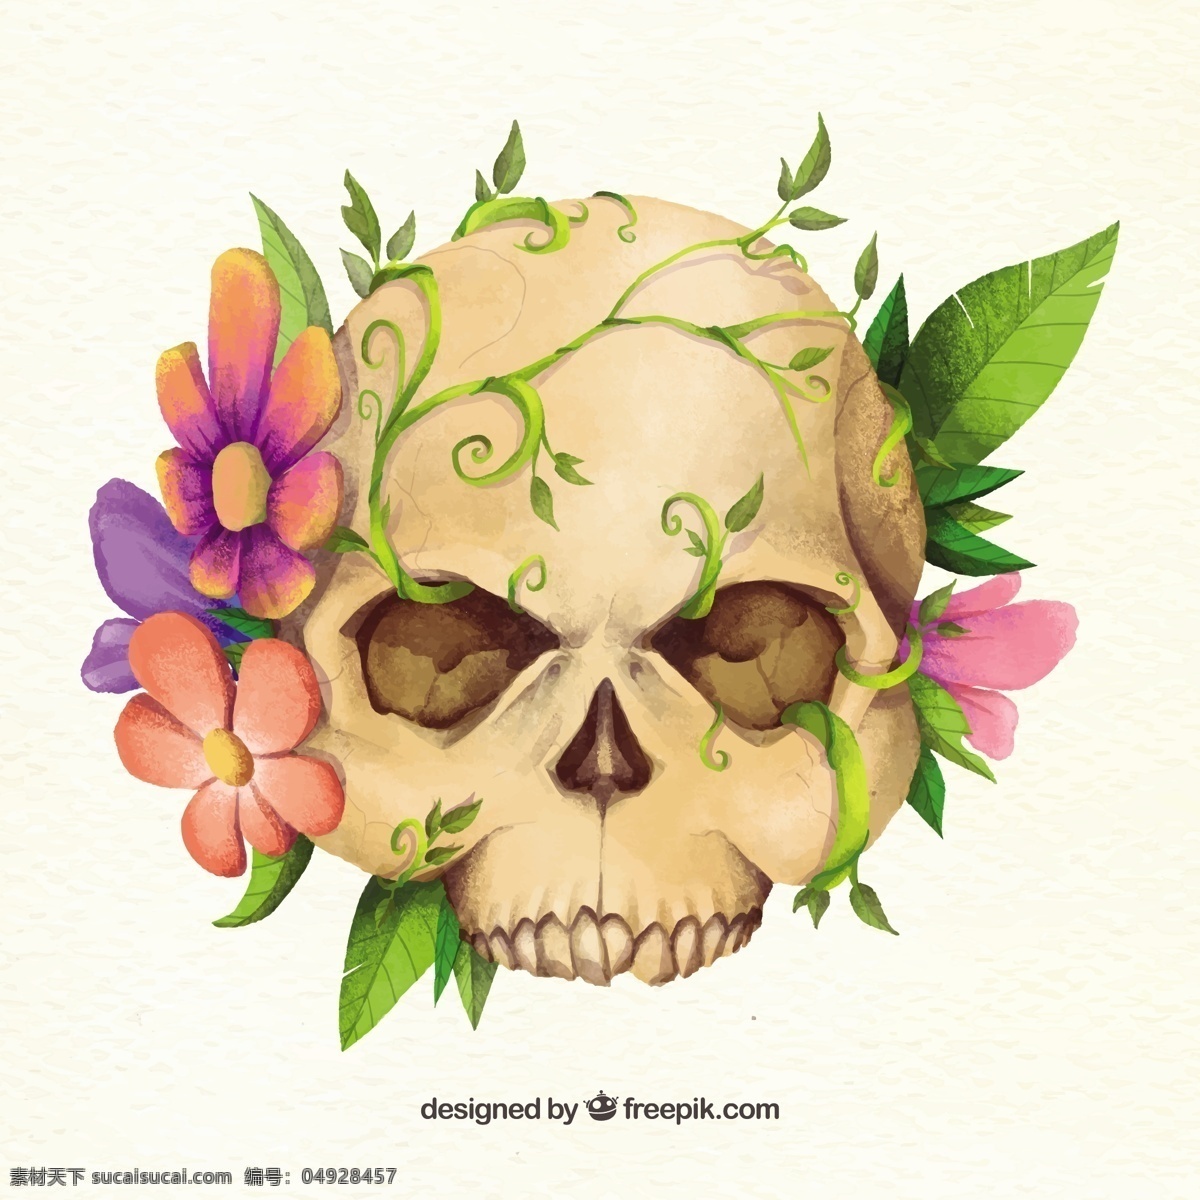 可怕的骷髅 背景 花卉 花卉背景 头骨 可爱 颜色 装饰 丰富多彩 骨骼 背景色 背景花 哥特式 漂亮 彩色 真棒